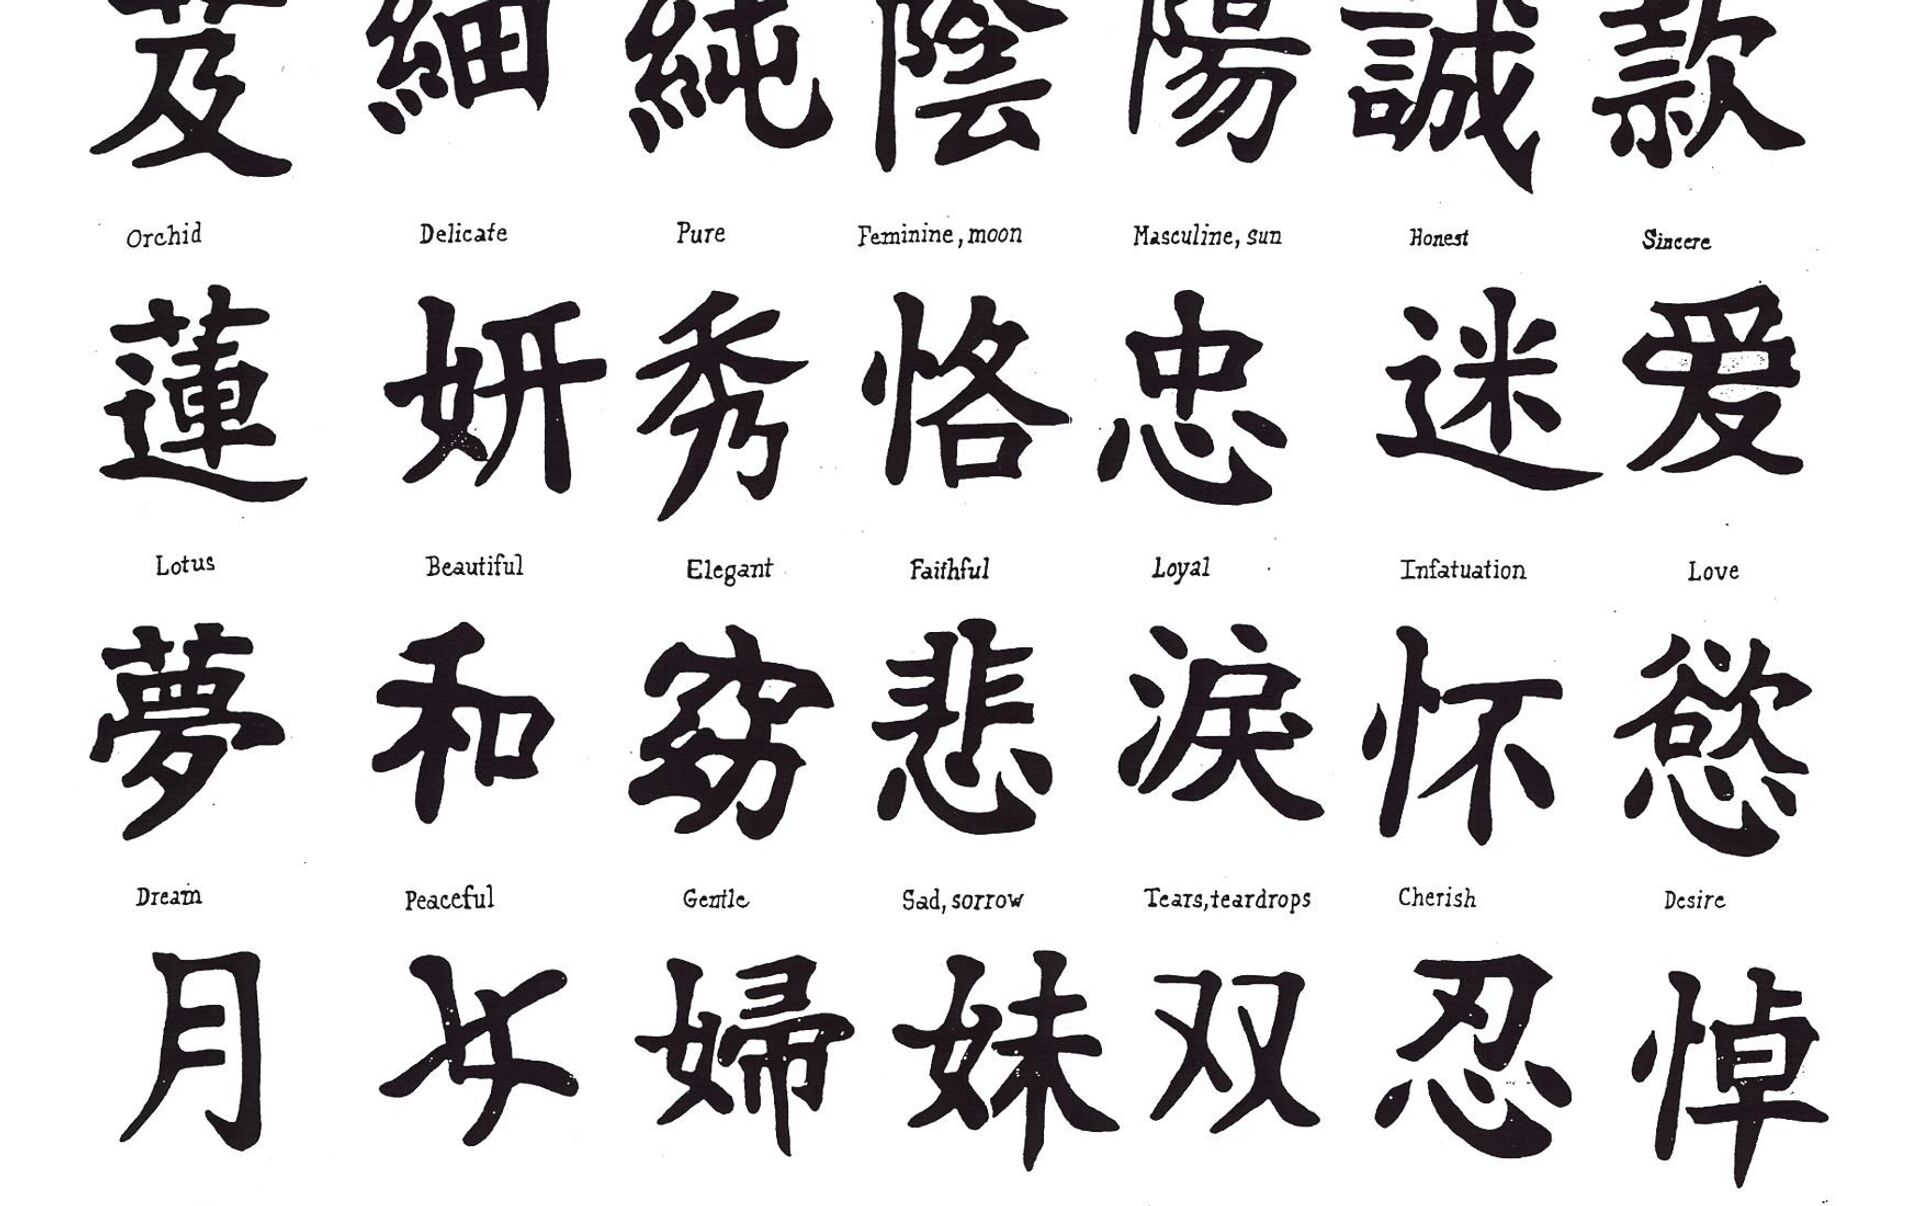 Японские иероглифы и их значение